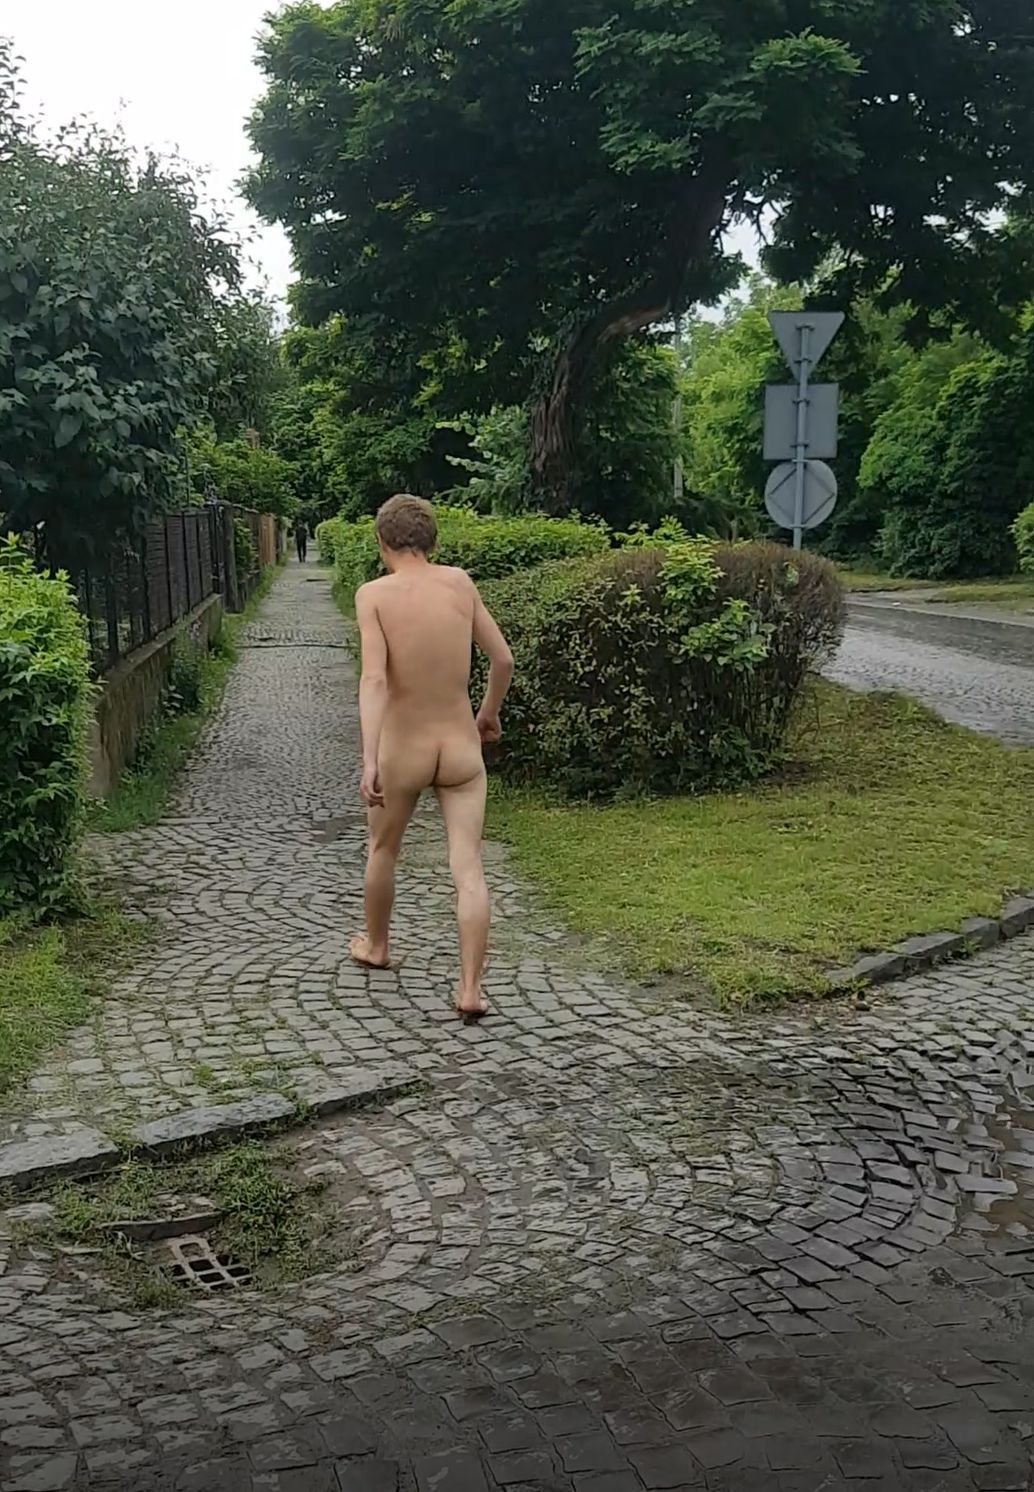 по городу гулял голый мужчина (120) фото